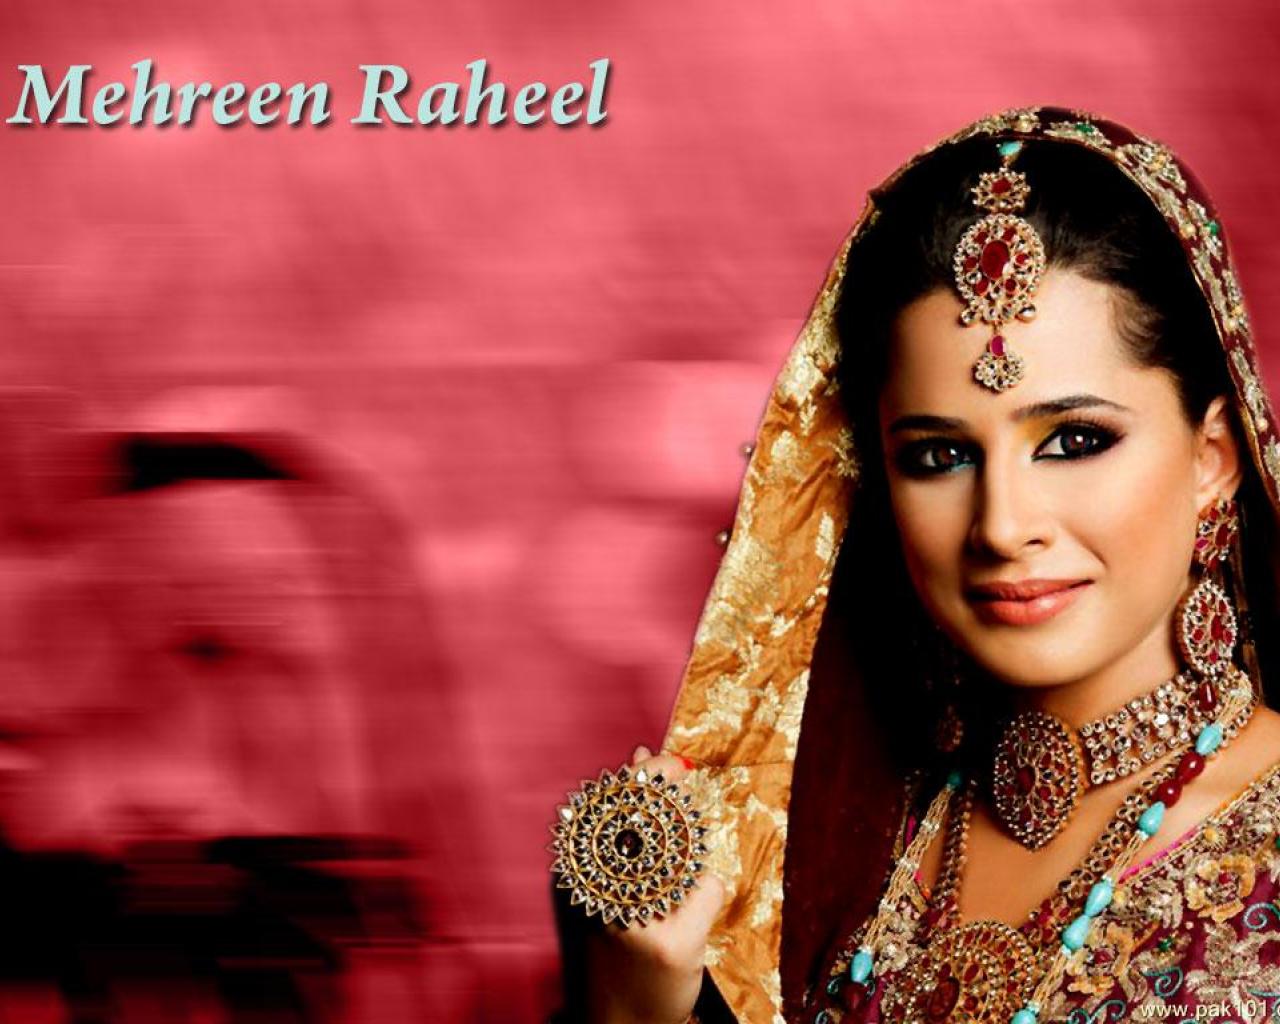 Download Wallpaper Mehreen Raheel - Bride Images Of Actress Mehreen Syed , HD Wallpaper & Backgrounds